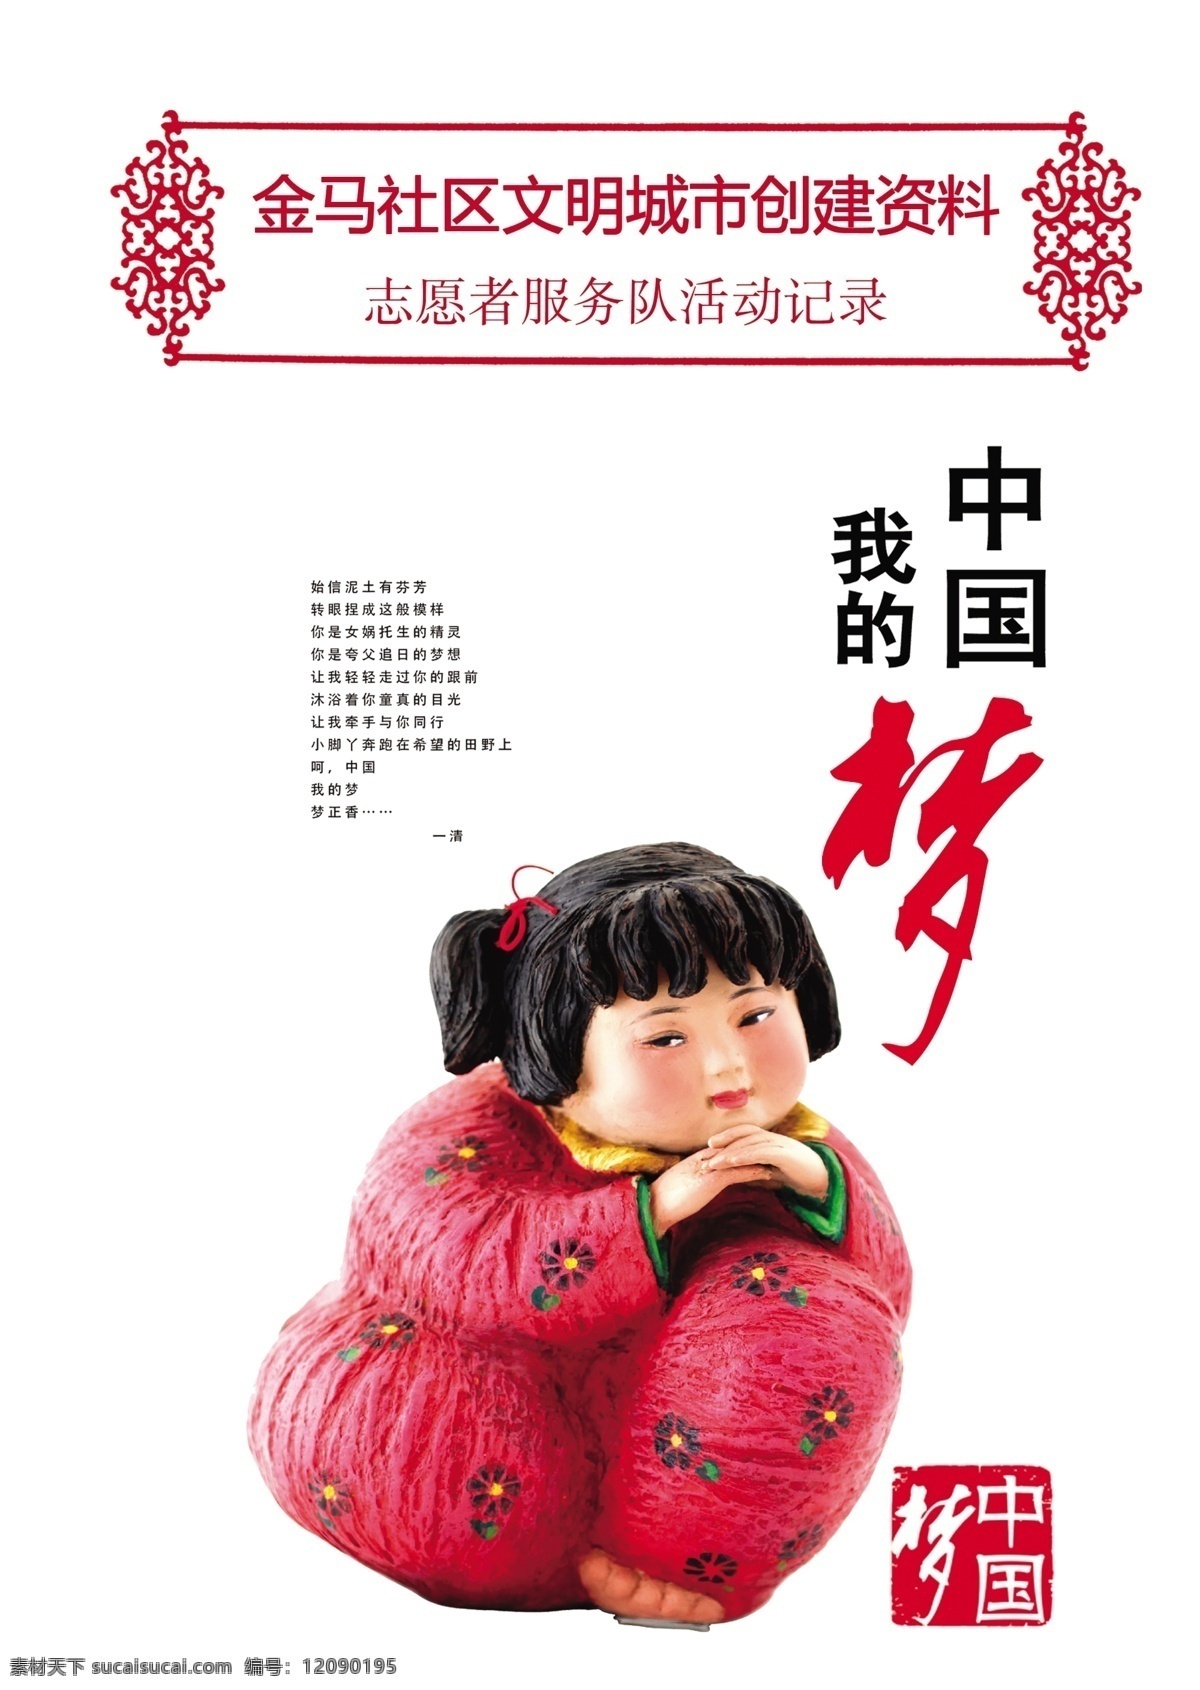 中国梦 梦 放飞中国梦 我的梦 中国娃娃 广告设计模板 源文件